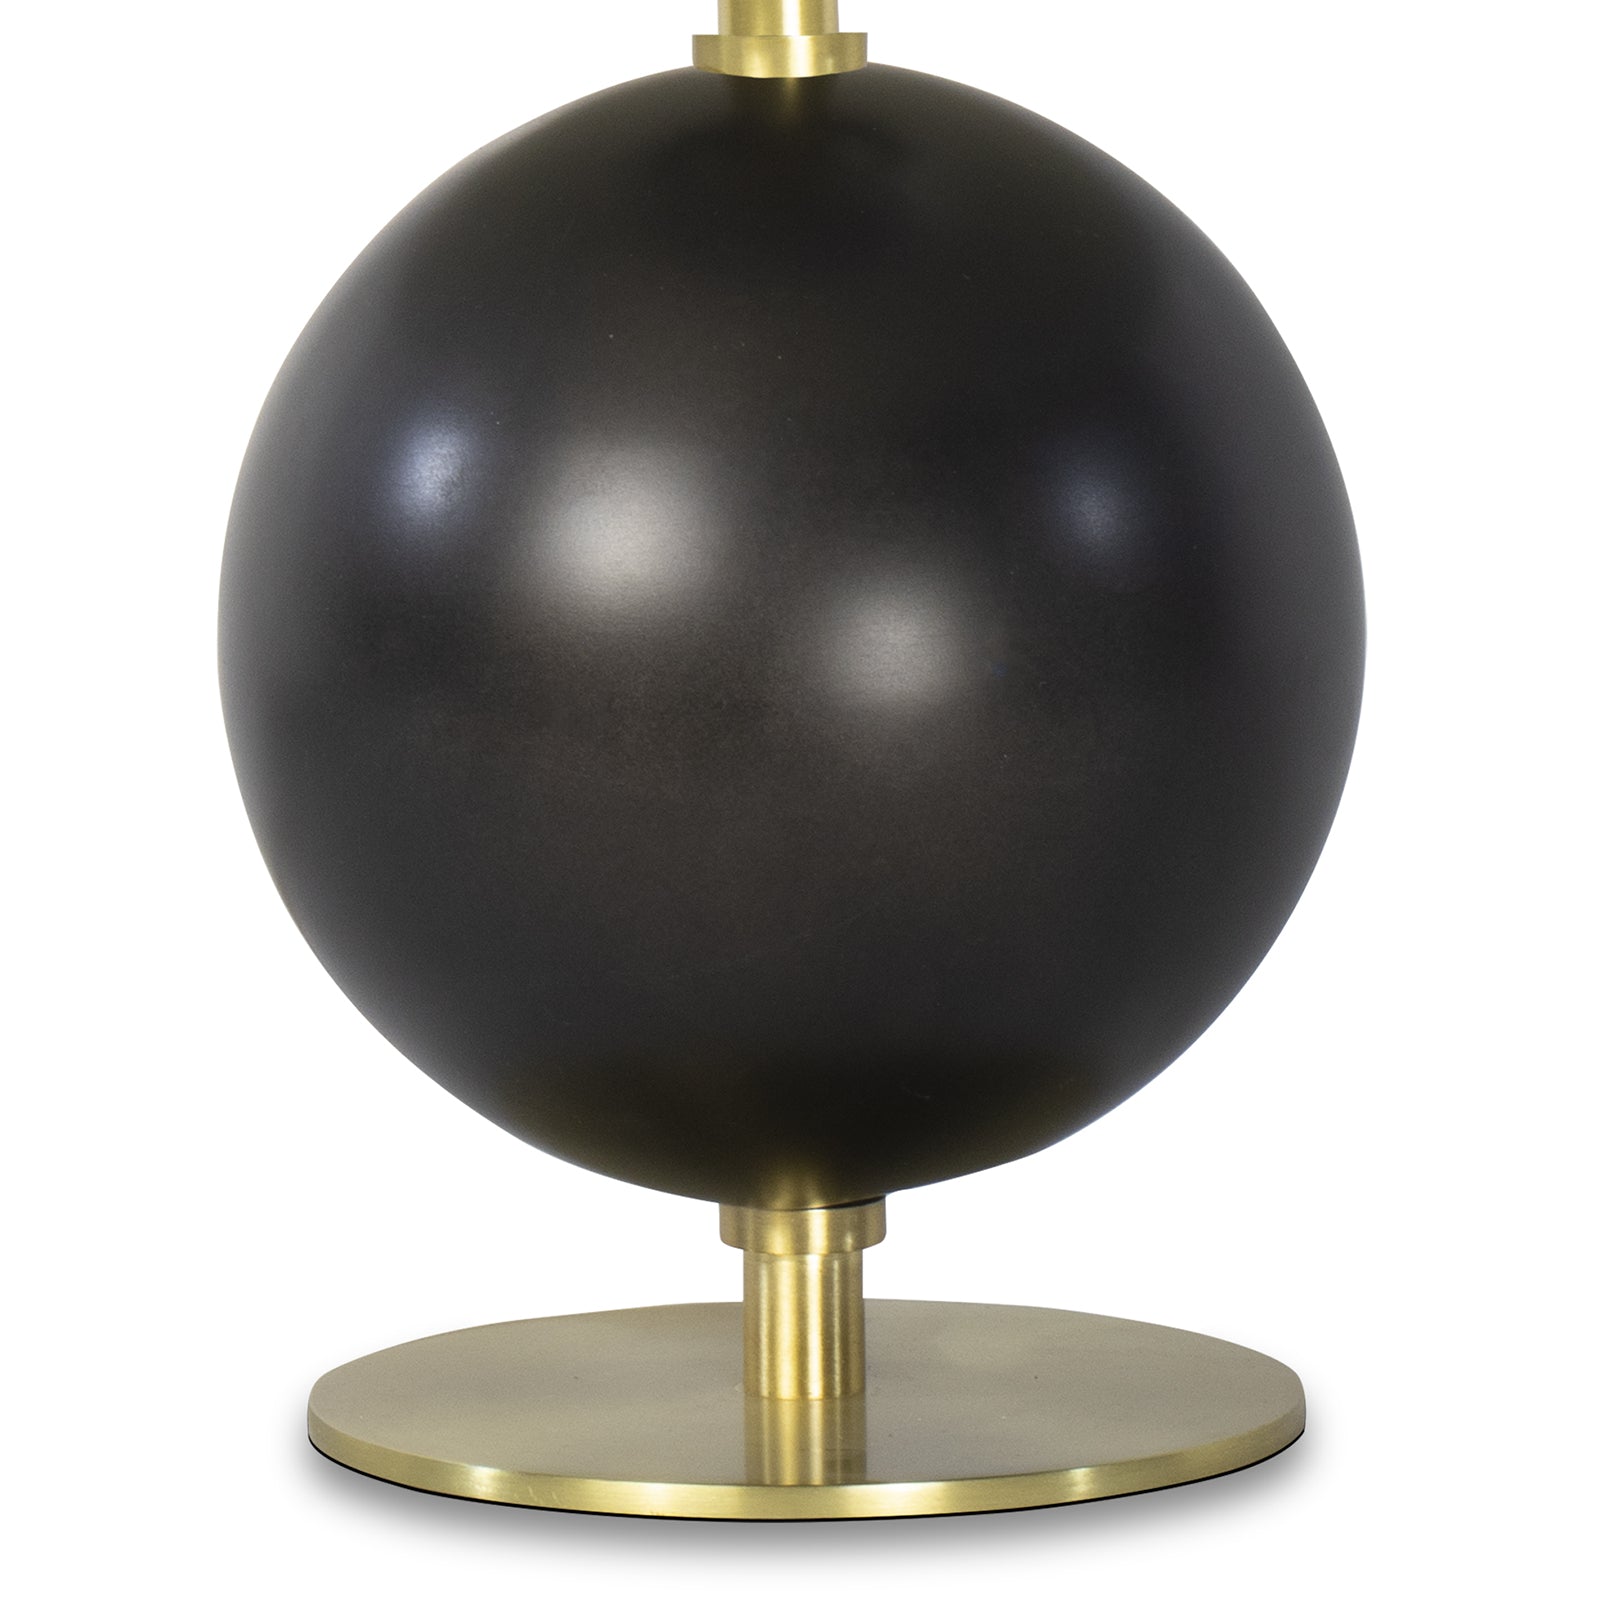 Regina Andrew Grant Mini Lamp